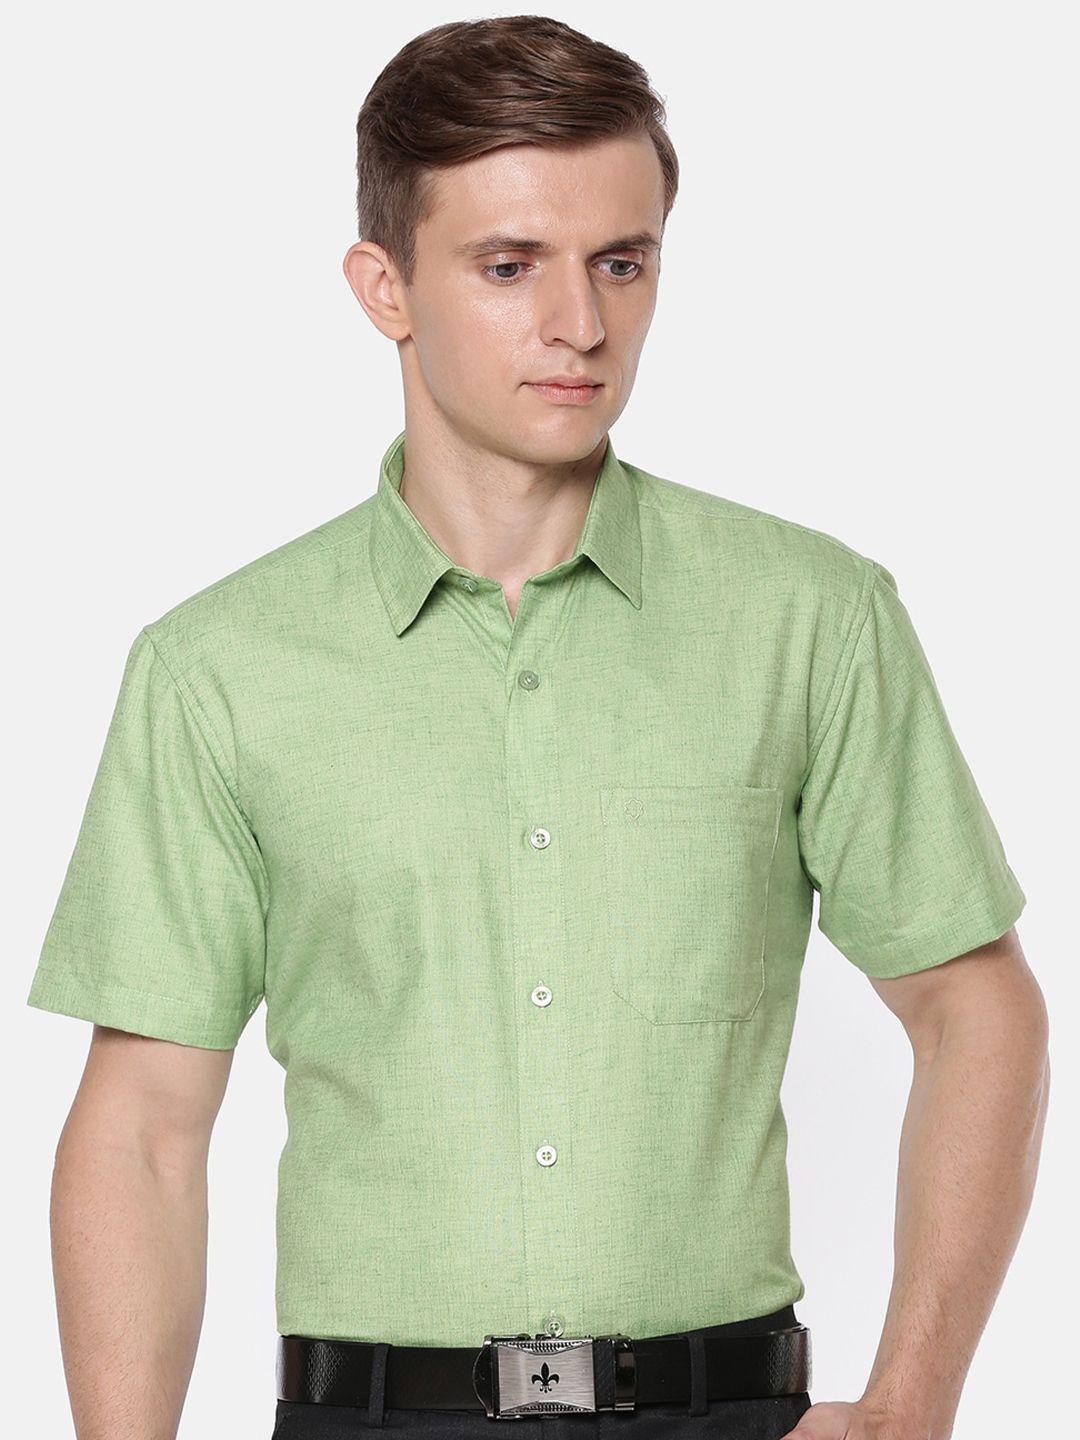 jansons-men-spread-collar-regular-fit-formal-shirt